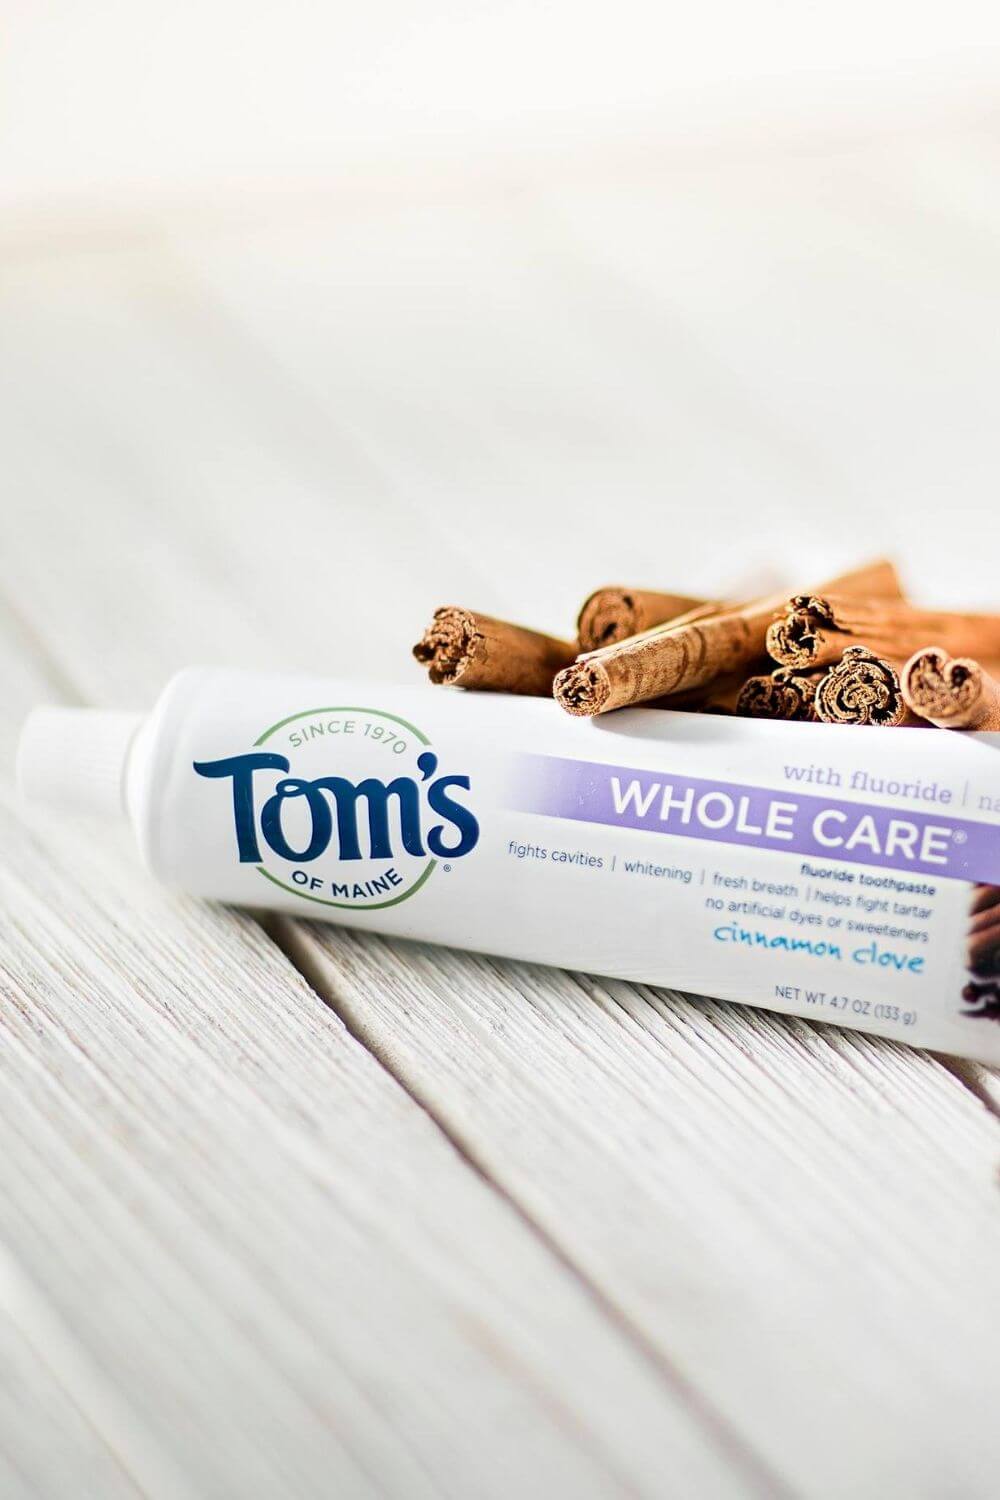 牙膏可能是最常使用的身体护理产品，这就是为什么它是我们仔细研究的第一批可持续的、无残酷的牙膏替代品之一……图片来源:Tom’s Of Maine #残酷免费牙膏#素食牙膏#可持续丛林